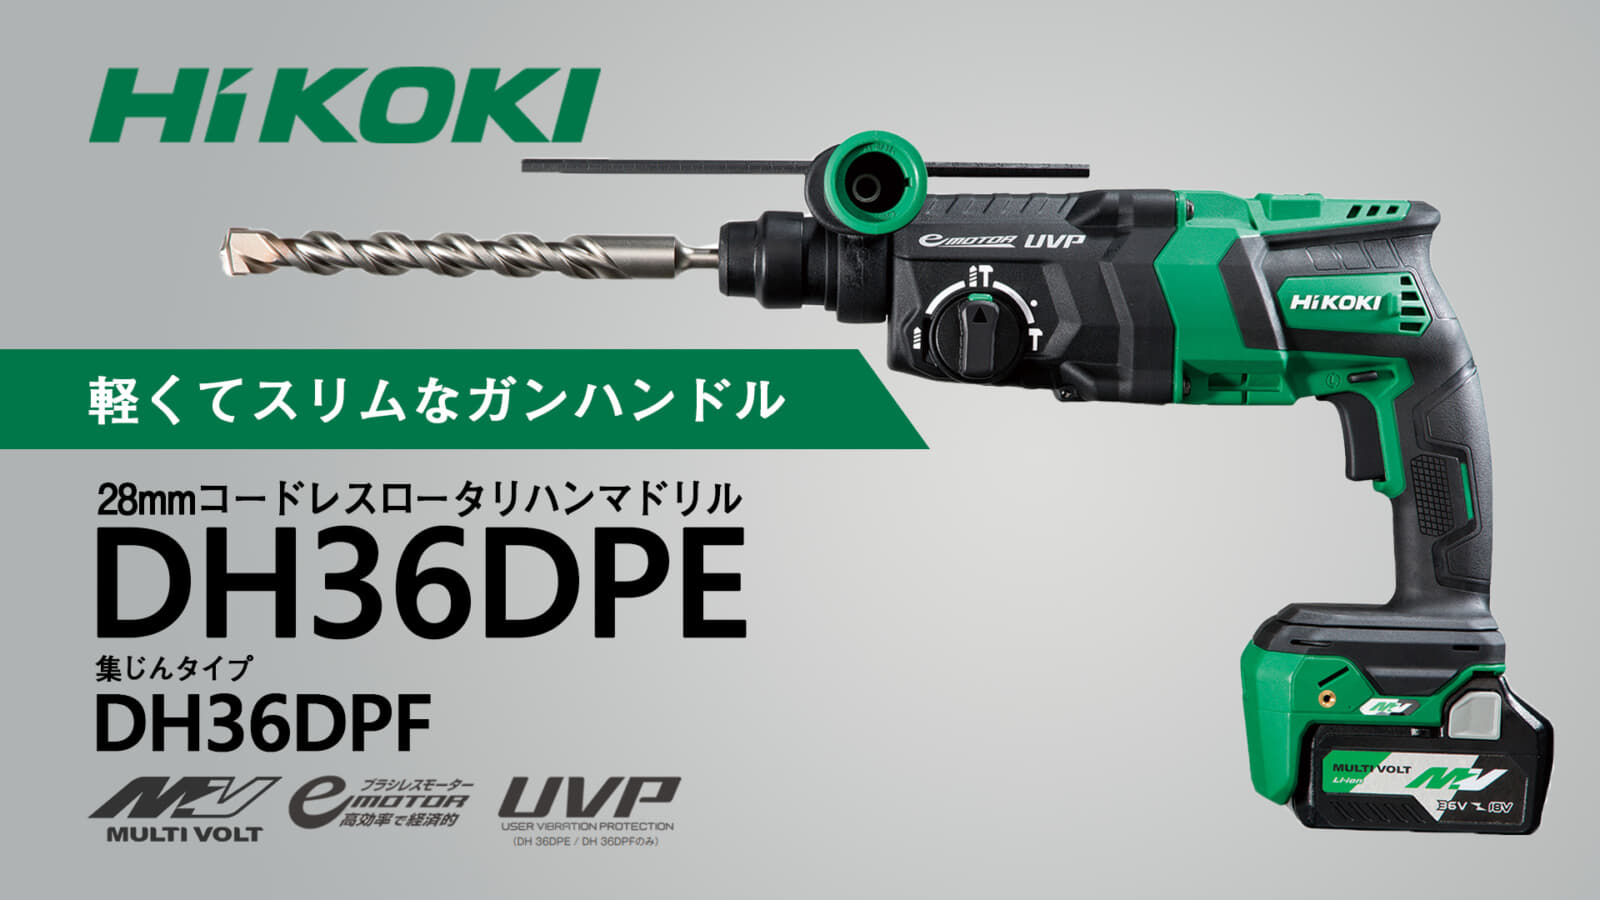 HiKOKI DH36DPE 28mmコードレスロータリハンマドリル、軽くてスリムなガンハンドル仕様 ｜ VOLTECHNO